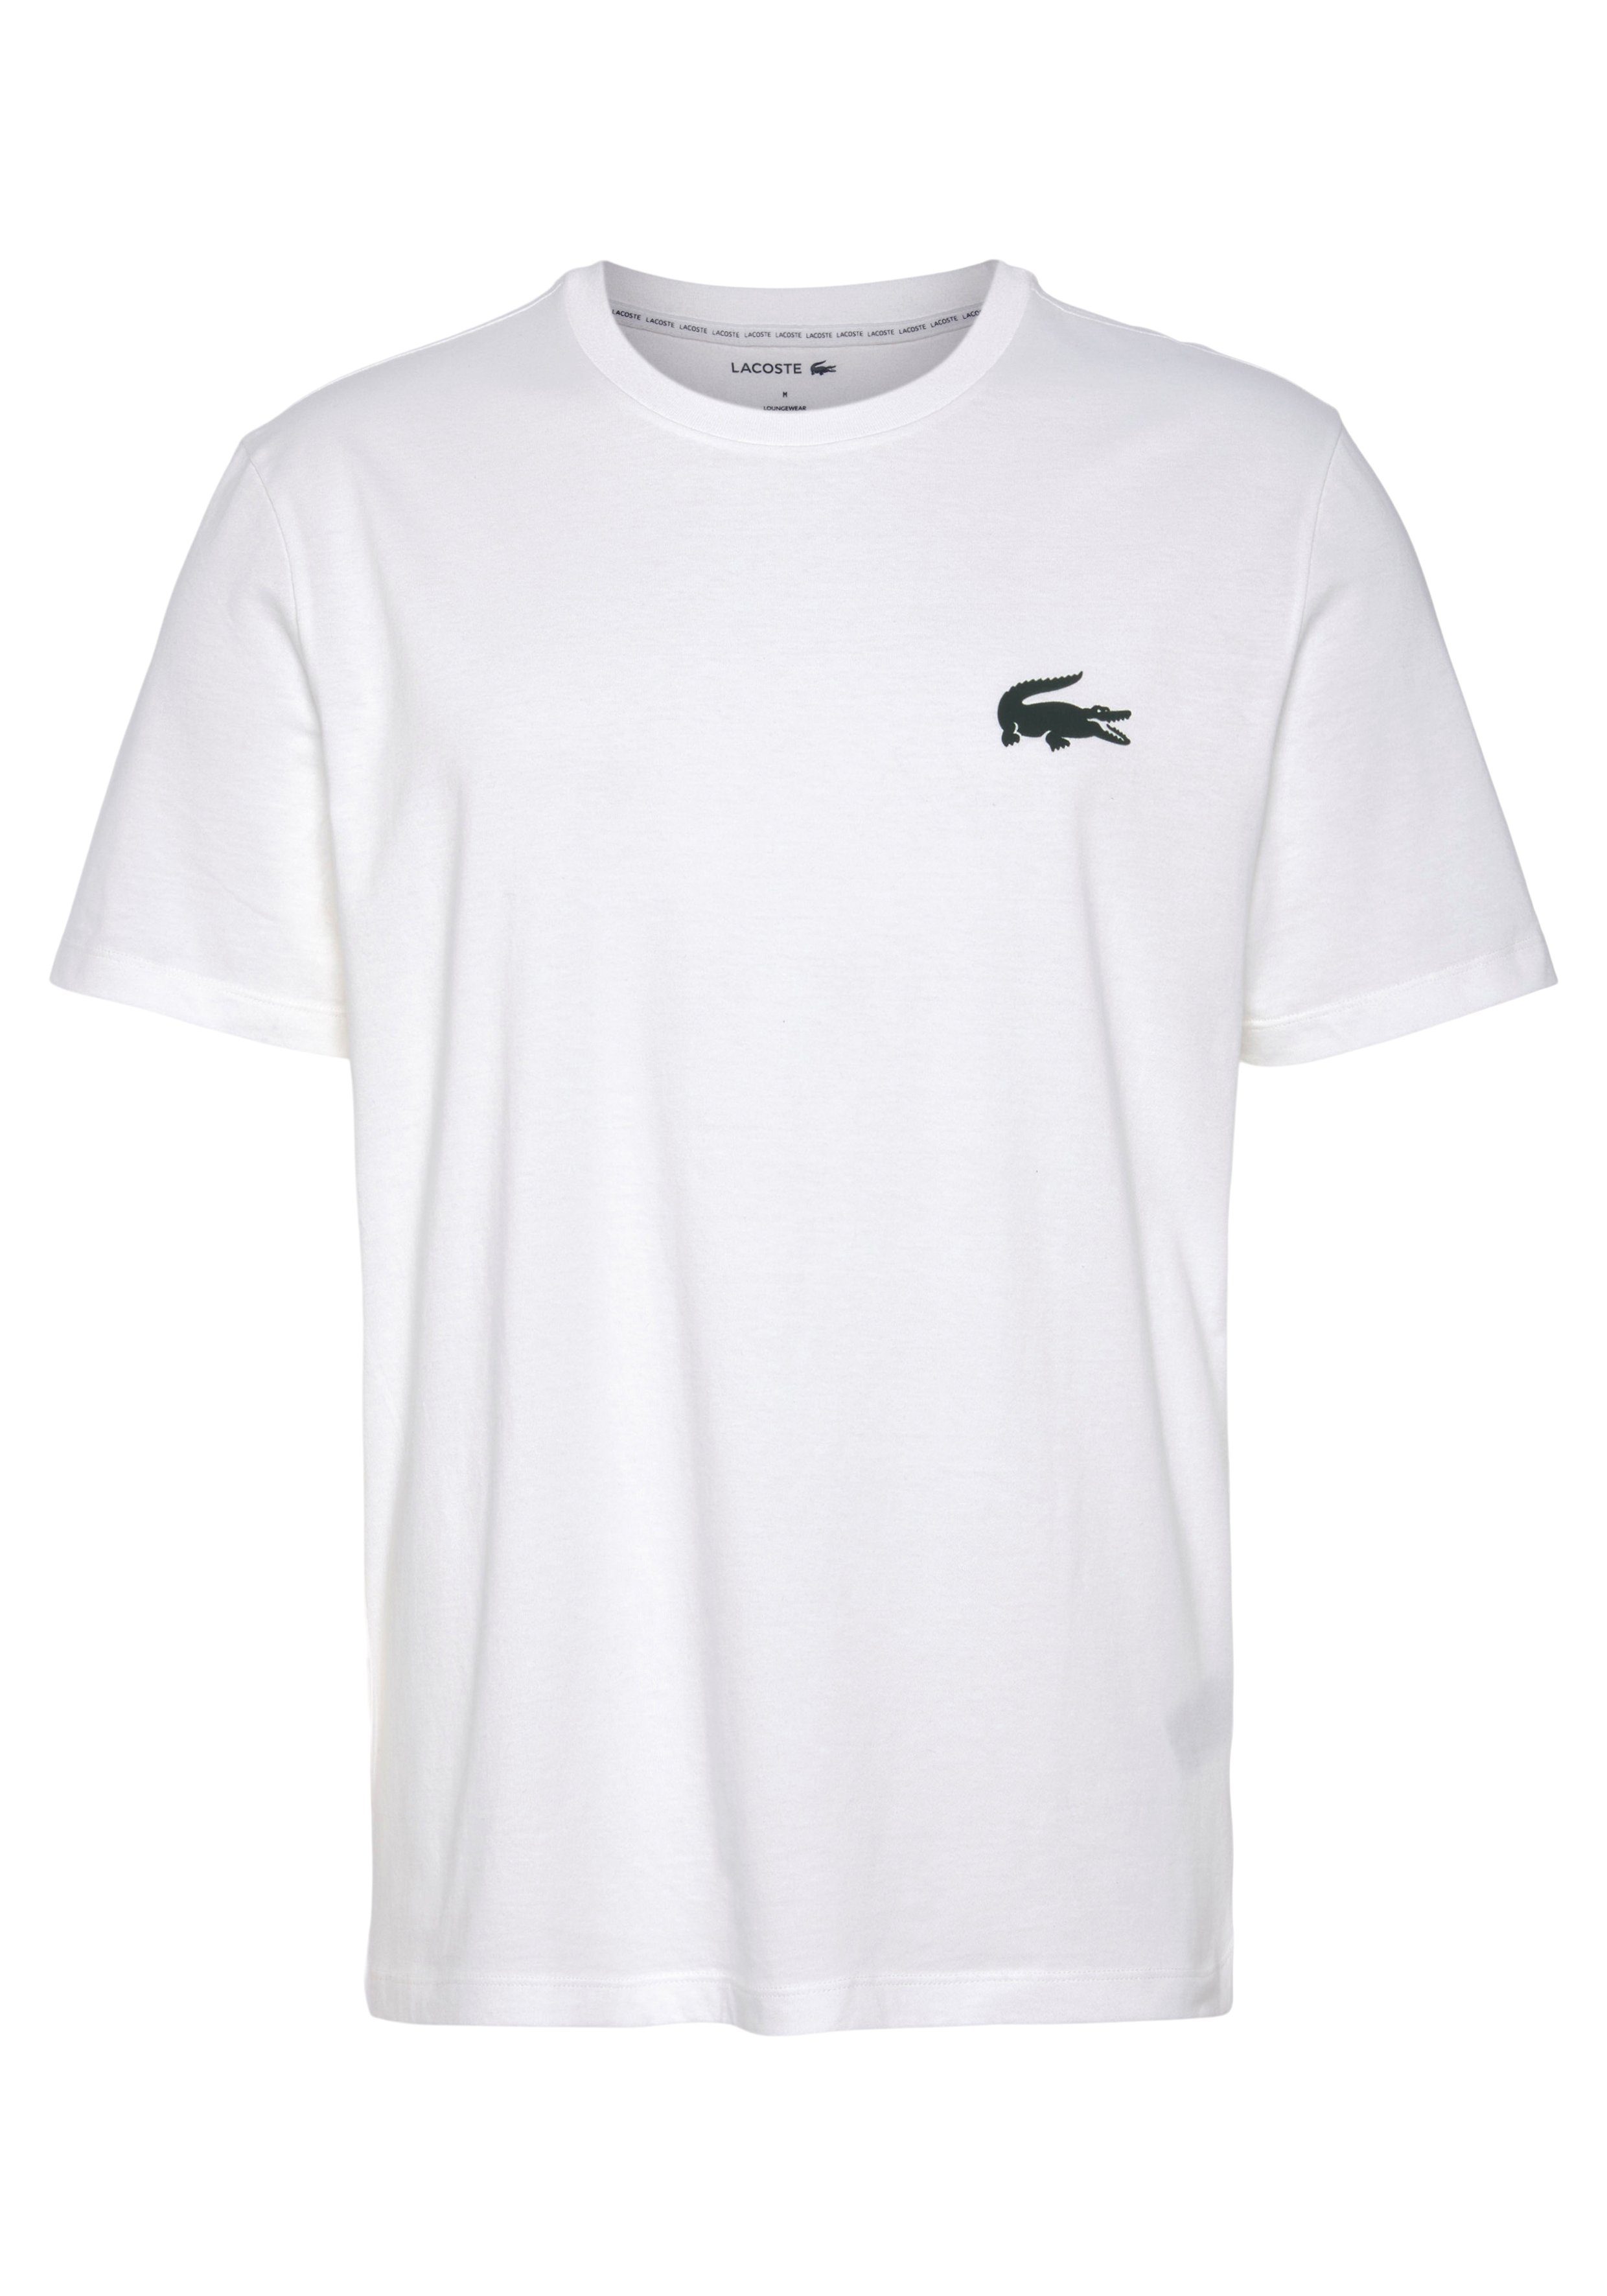 Lacoste T-Shirt mit großem Krokodillogo auf der Brust weiß